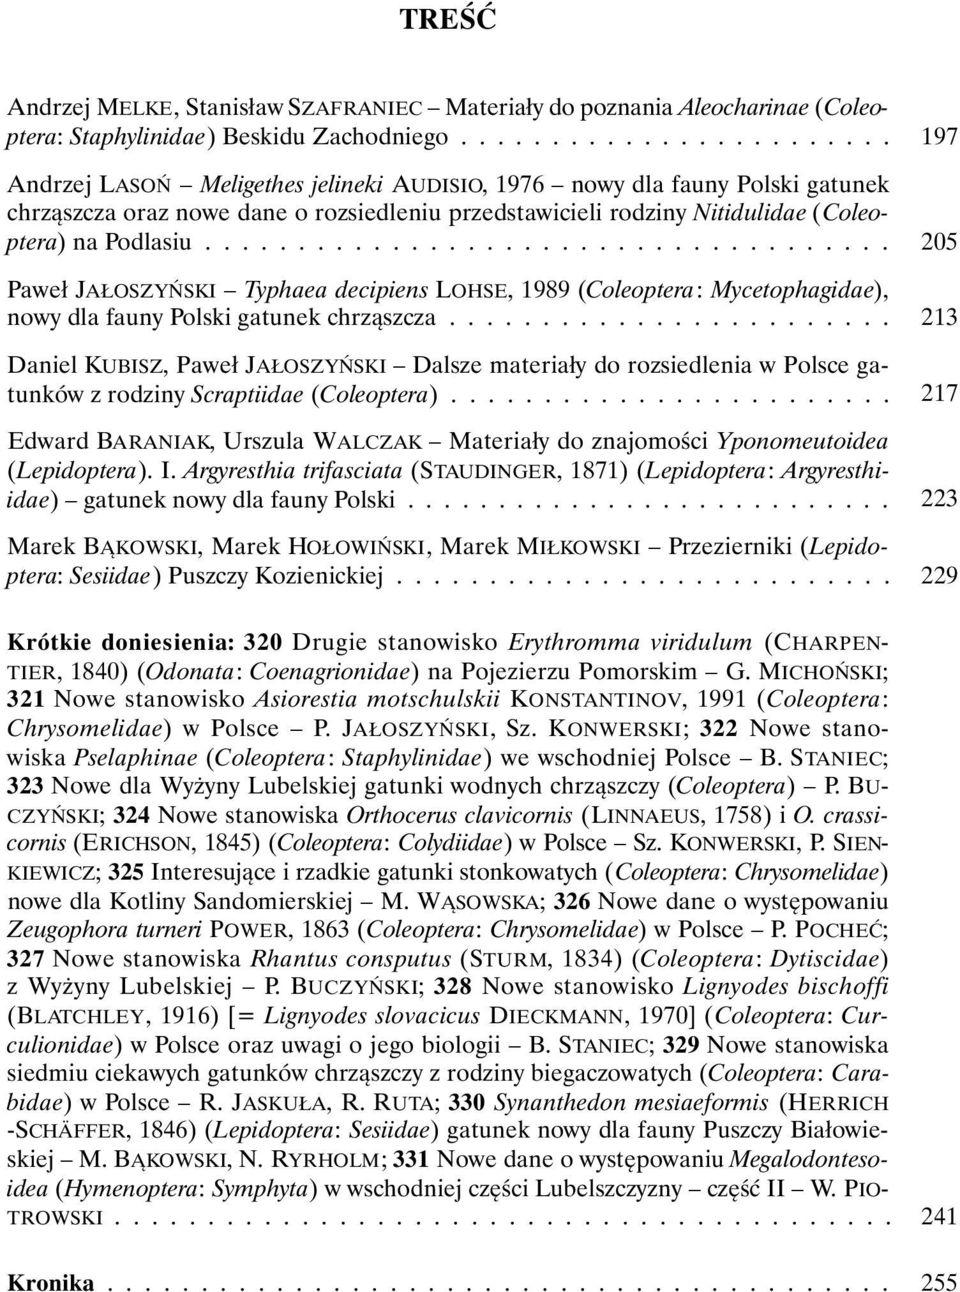 .................................... Paweł JAŁOSZYŃSKI Typhaea decipiens LOHSE, 1989 (Coleoptera: Mycetophagidae), nowy dla fauny Polski gatunek chrząszcza.